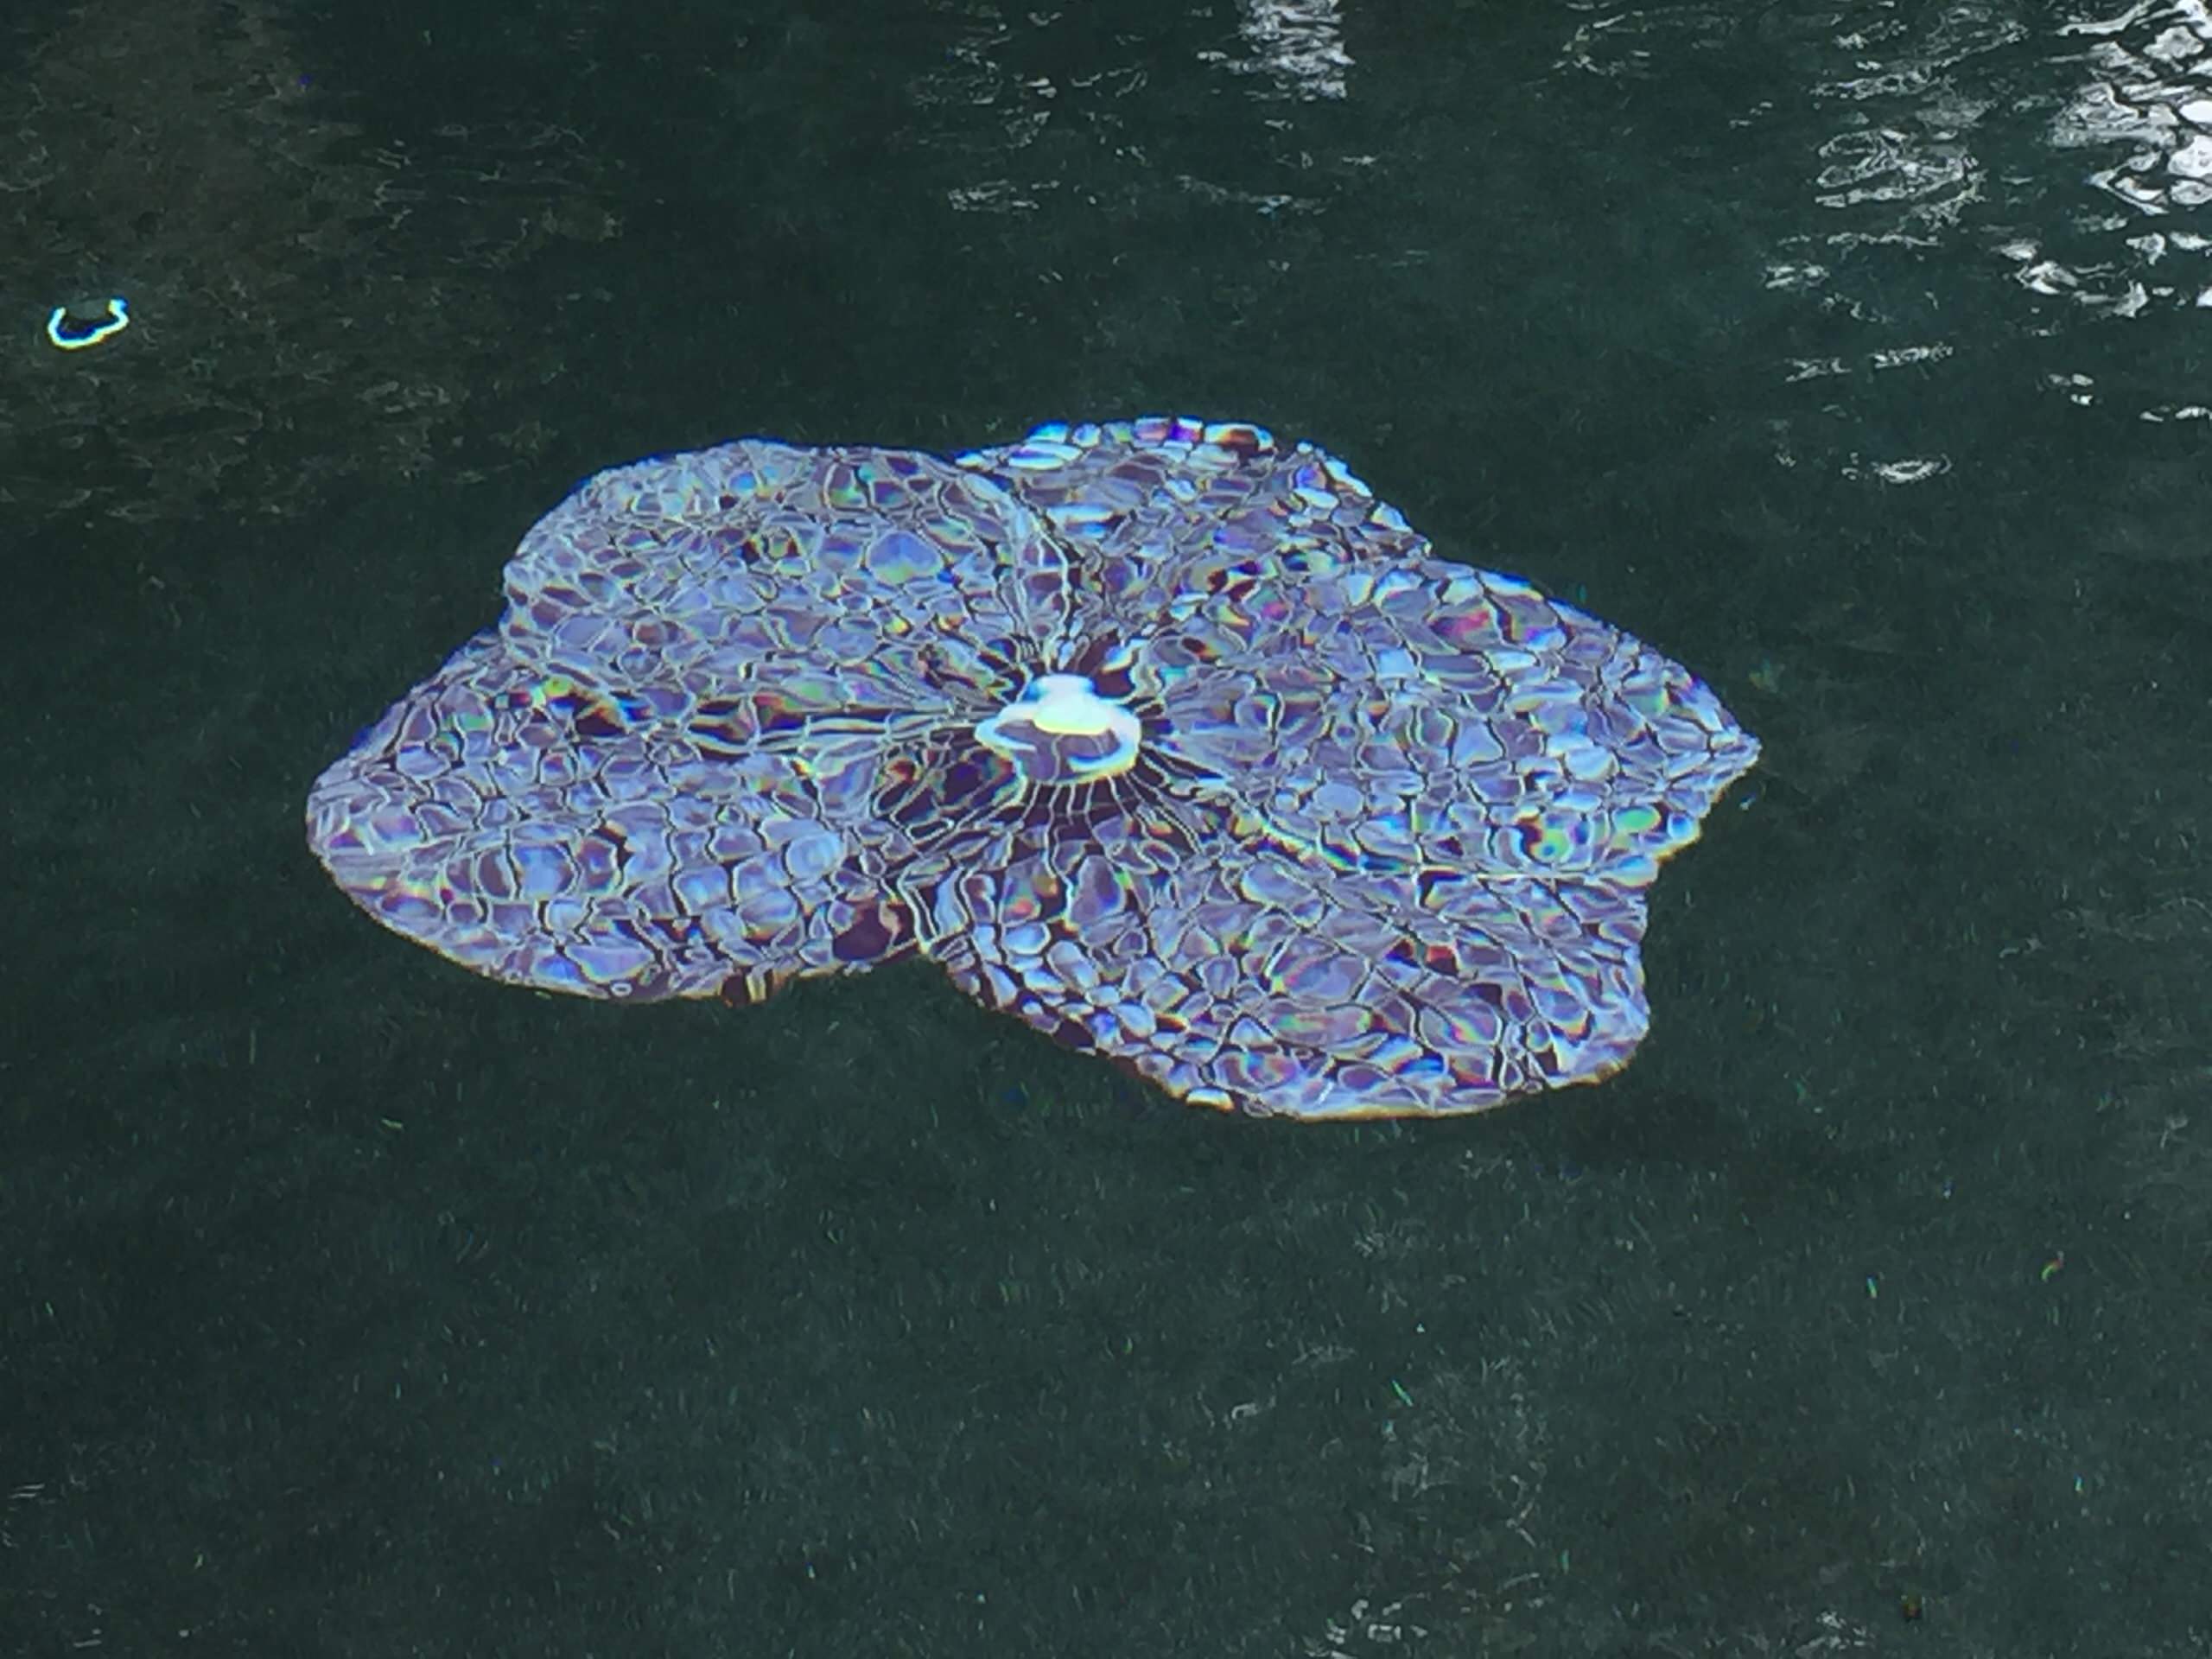 Vanda mosaic in the swimming pool.